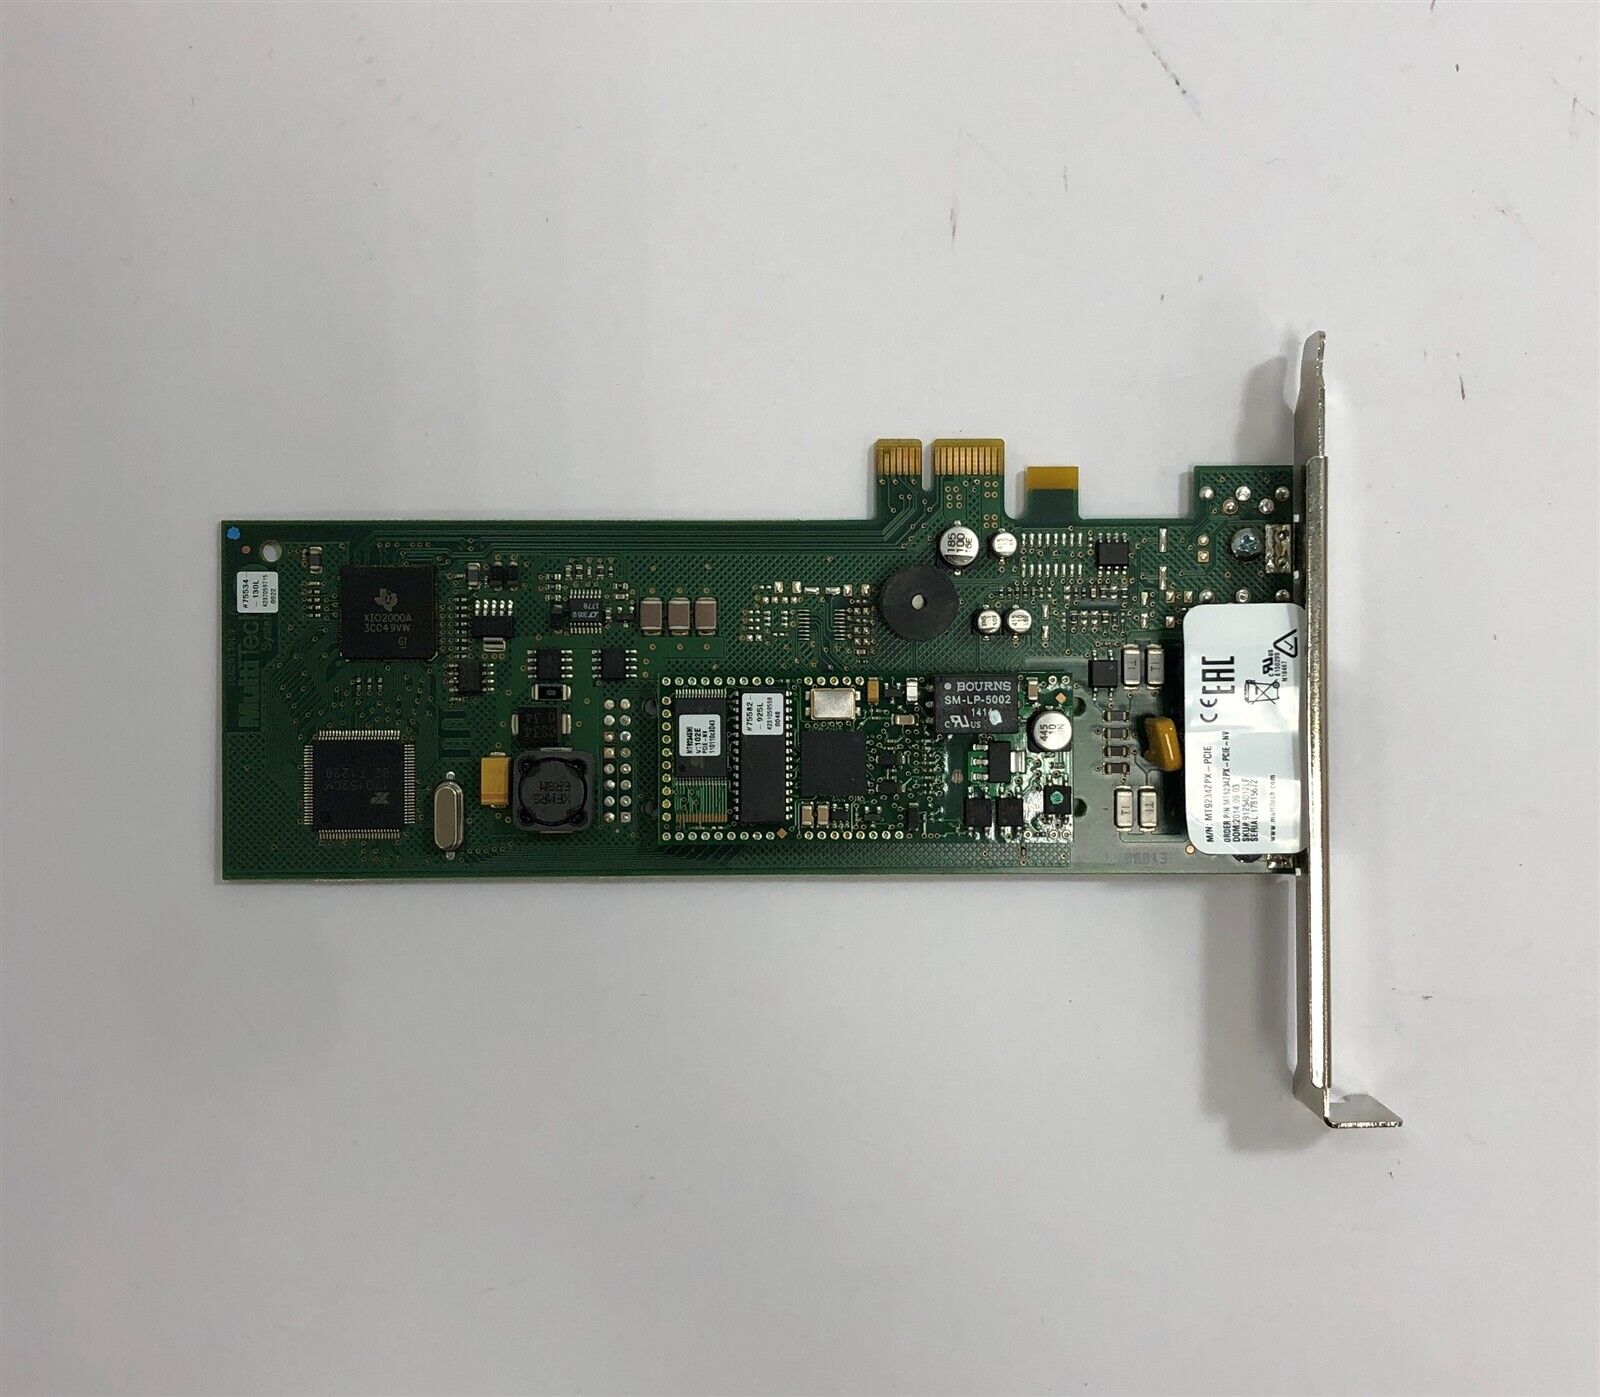 MultiTech MT9234ZPX-PCIE-NV MultiModem ZPX 56Kb/s Modem Card